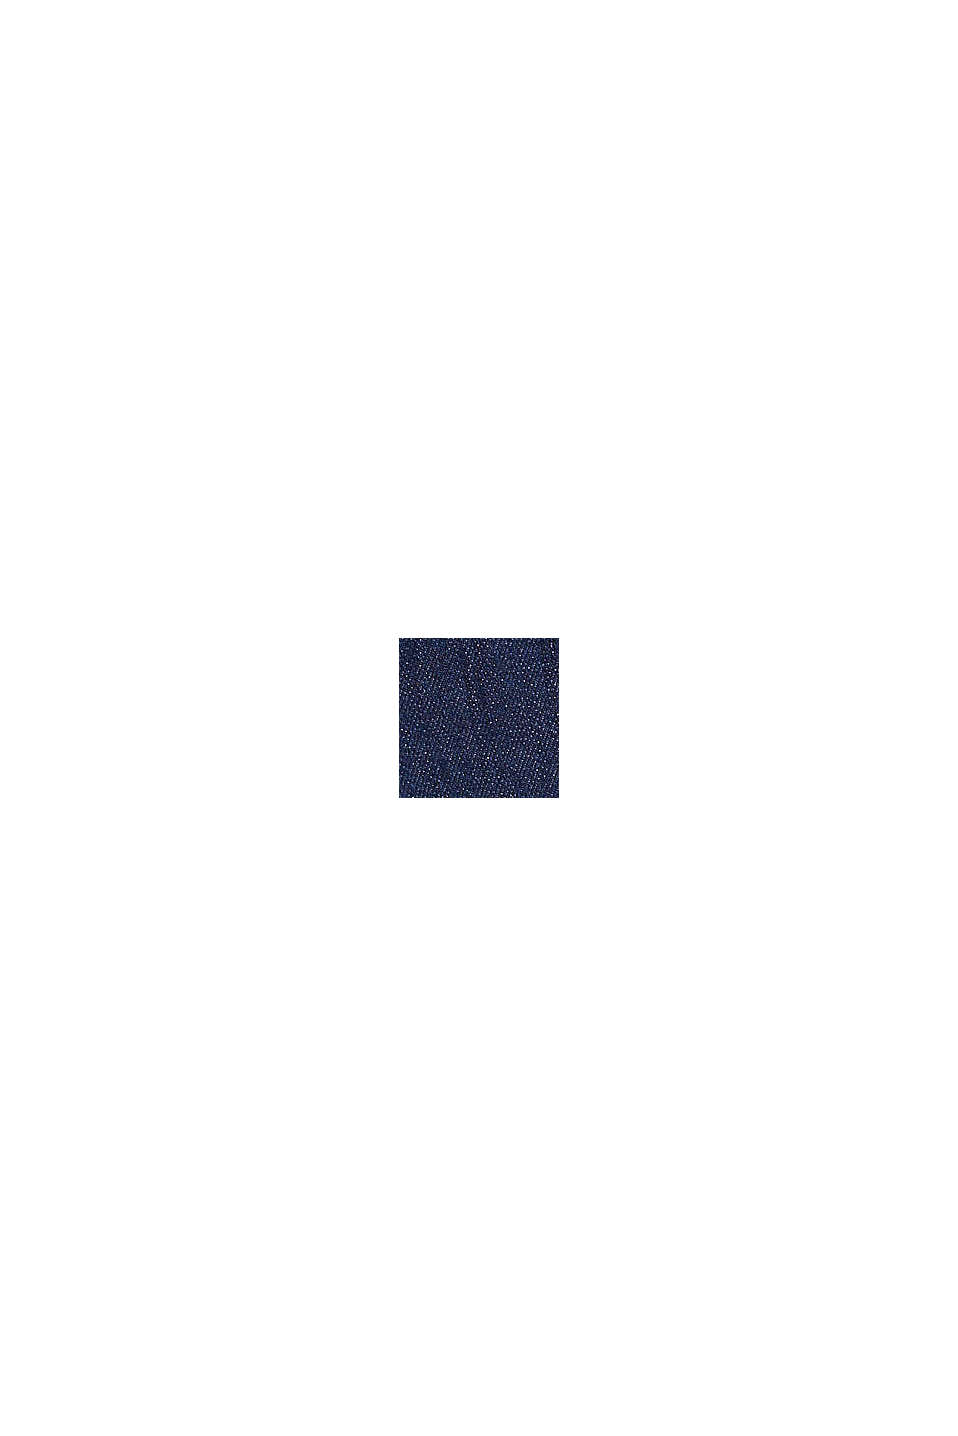 In materiale riciclato: camicia in jeans in misto cotone biologico, BLUE RINSE, swatch